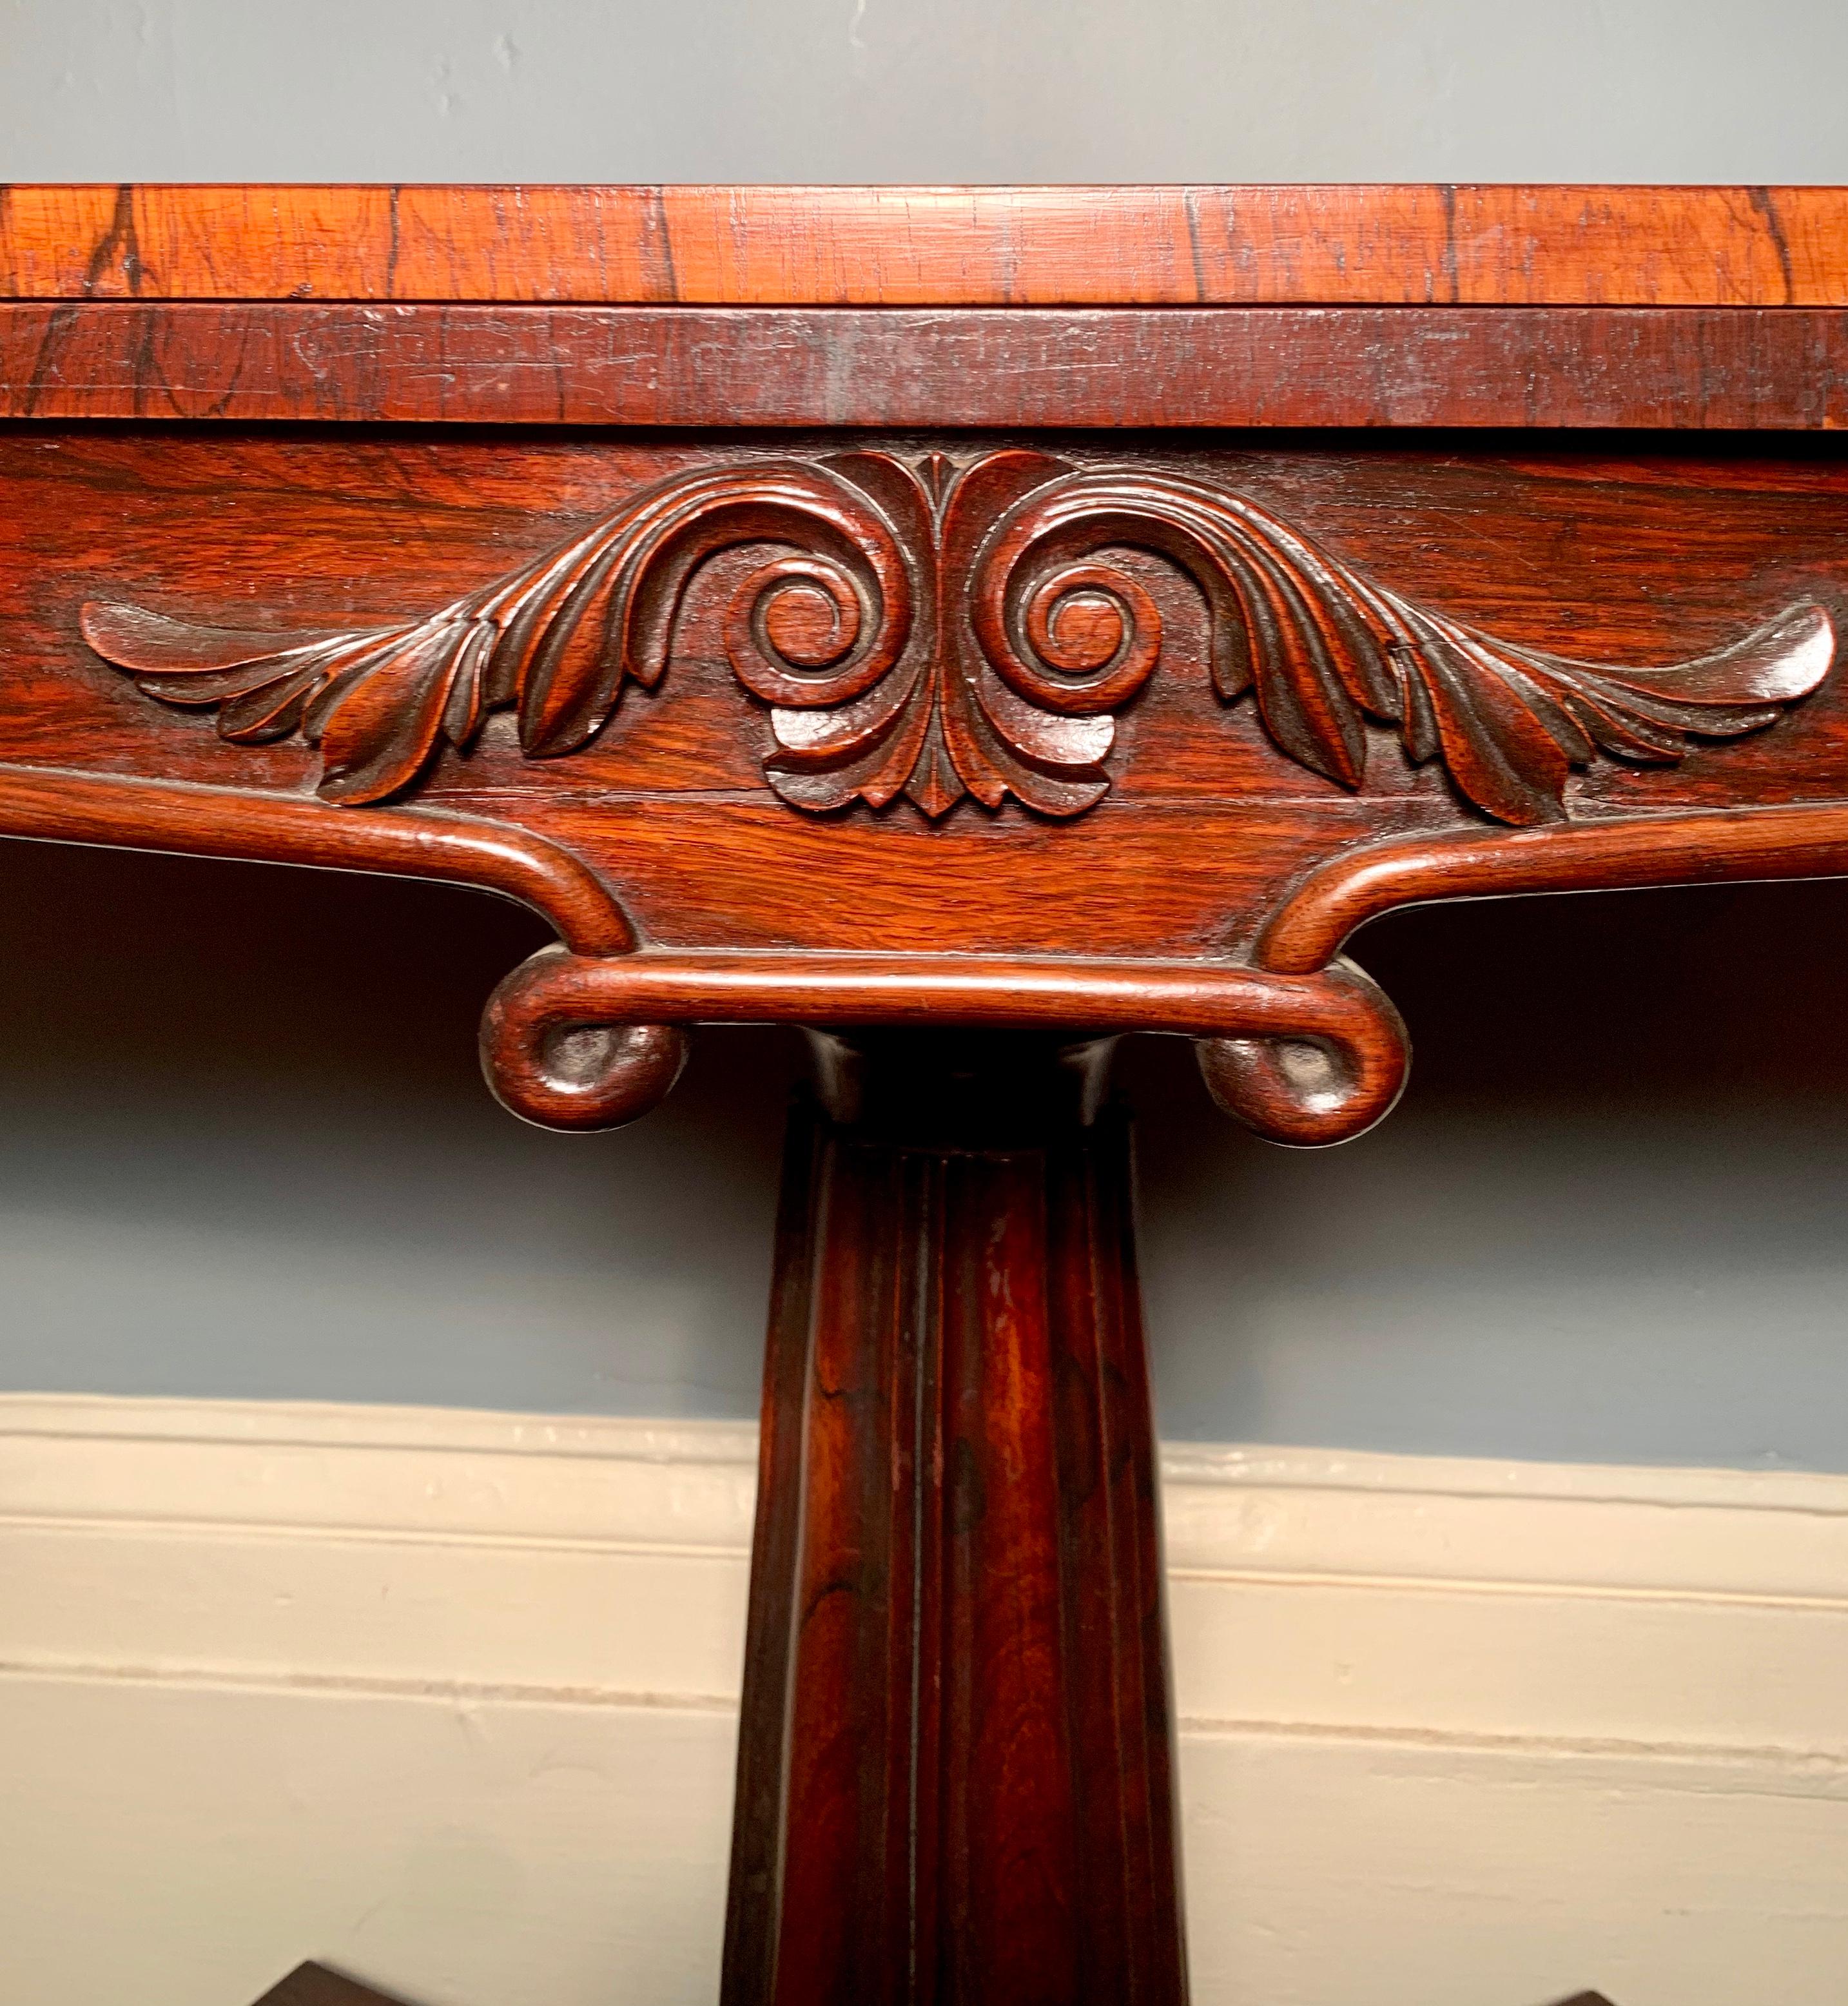 Antique table console en bois de rose de la période Régence anglaise, vers 1810-1830.

    